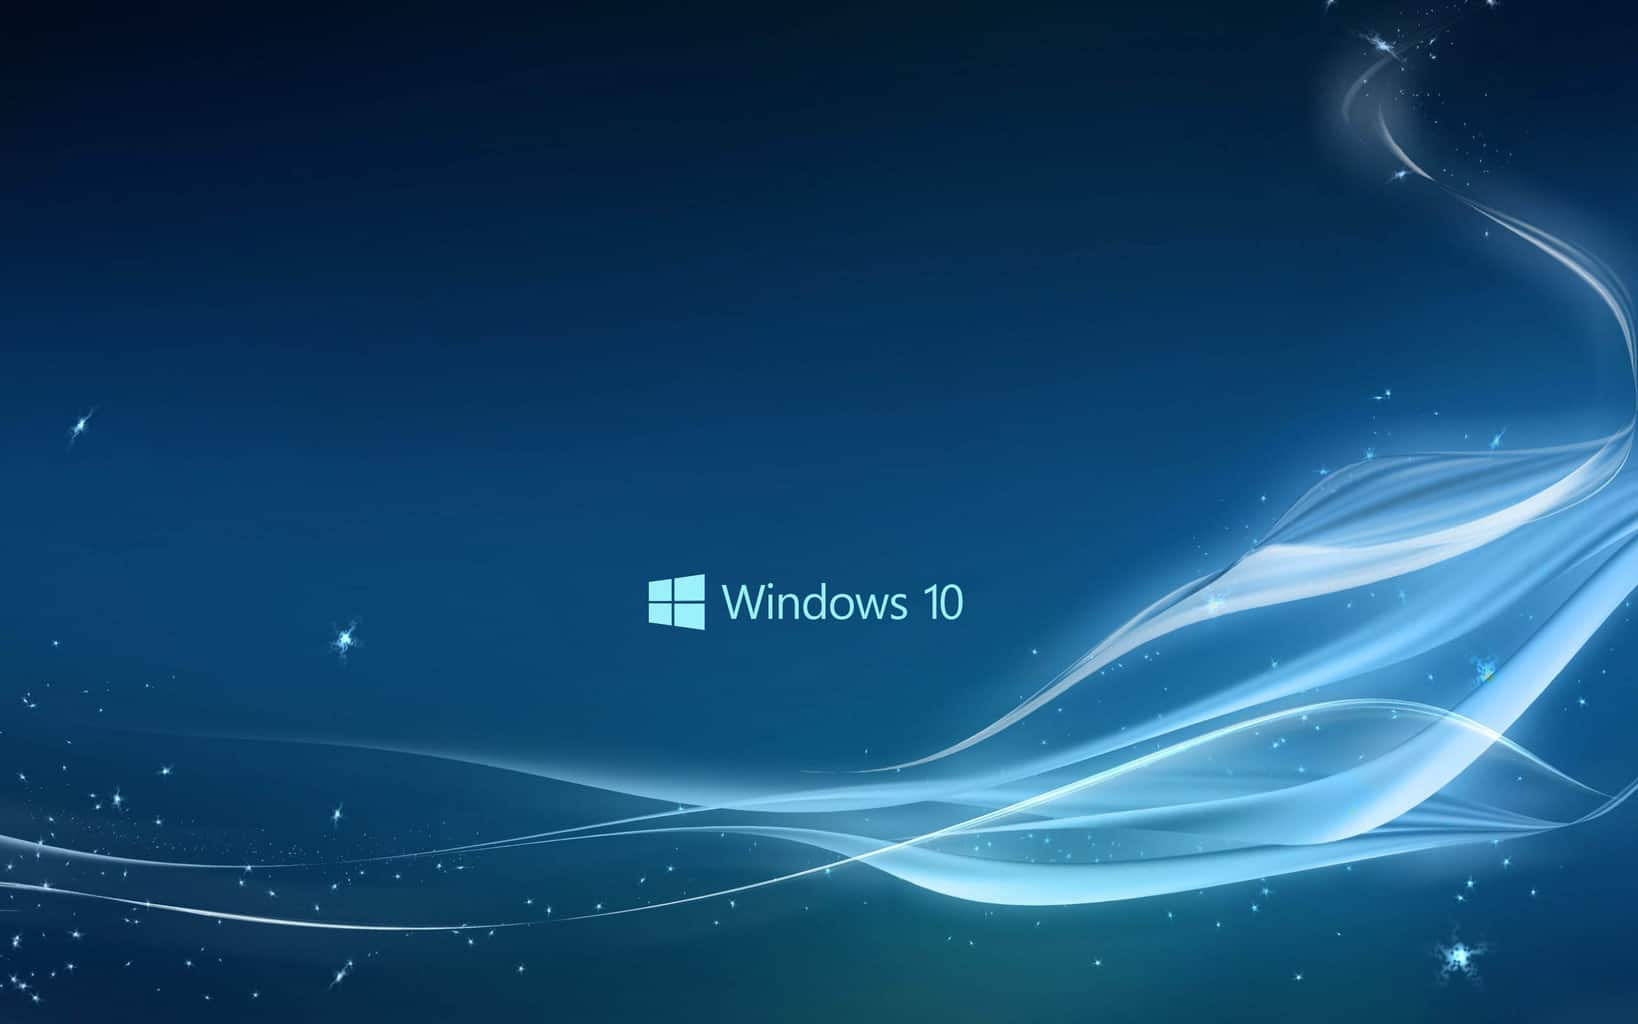 Hình nền đẹp Windows 10 miễn phí sẽ đem đến cho bạn một không gian làm việc đầy tươi mới và đầy sắc màu. Hãy khám phá các hình nền đẹp trên Windows 10 và tận hưởng những khoảnh khắc thật tuyệt vời trên máy tính của mình.